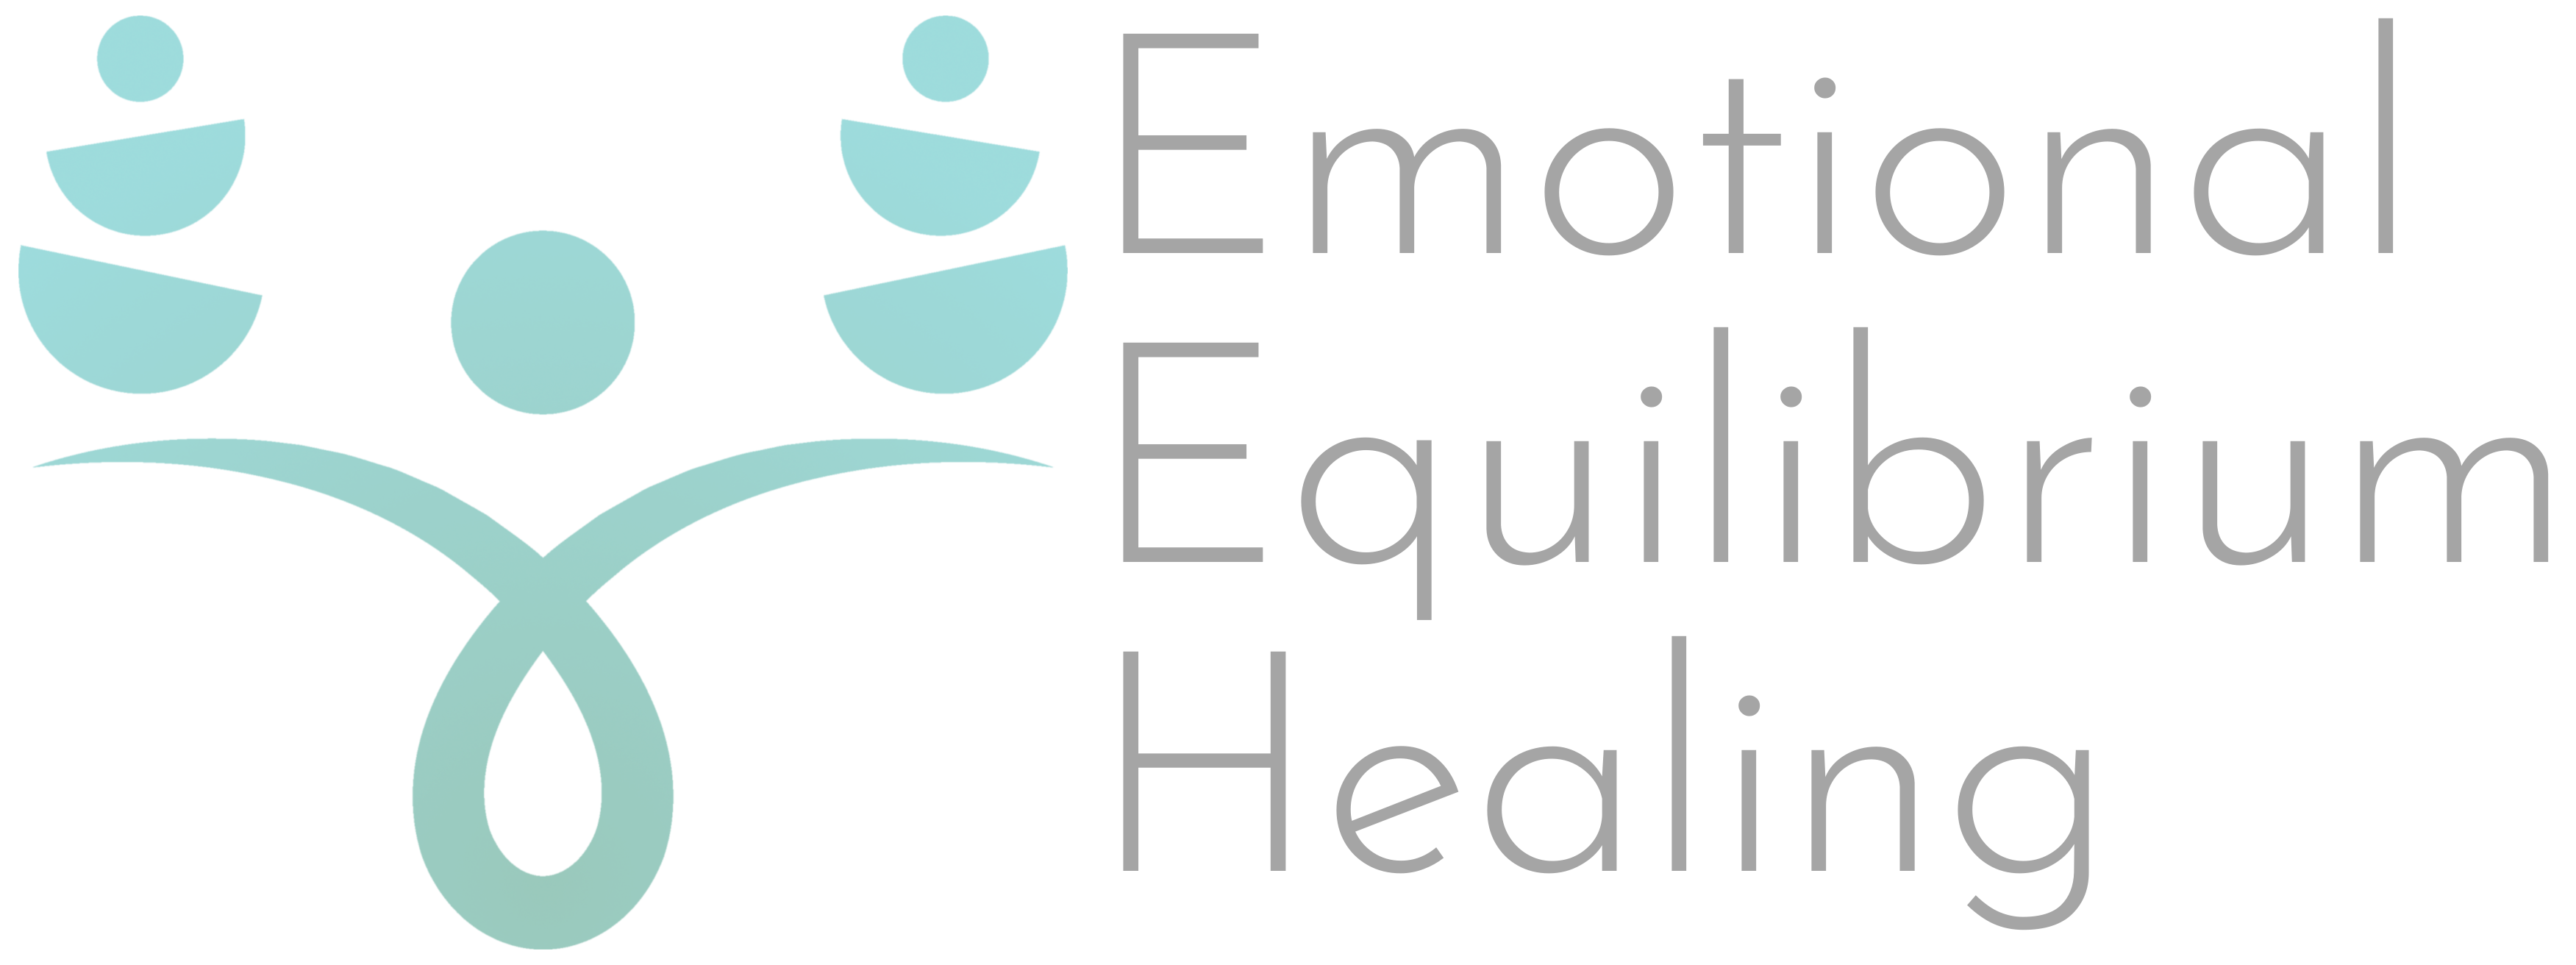 Emotional Equilibrium Healing